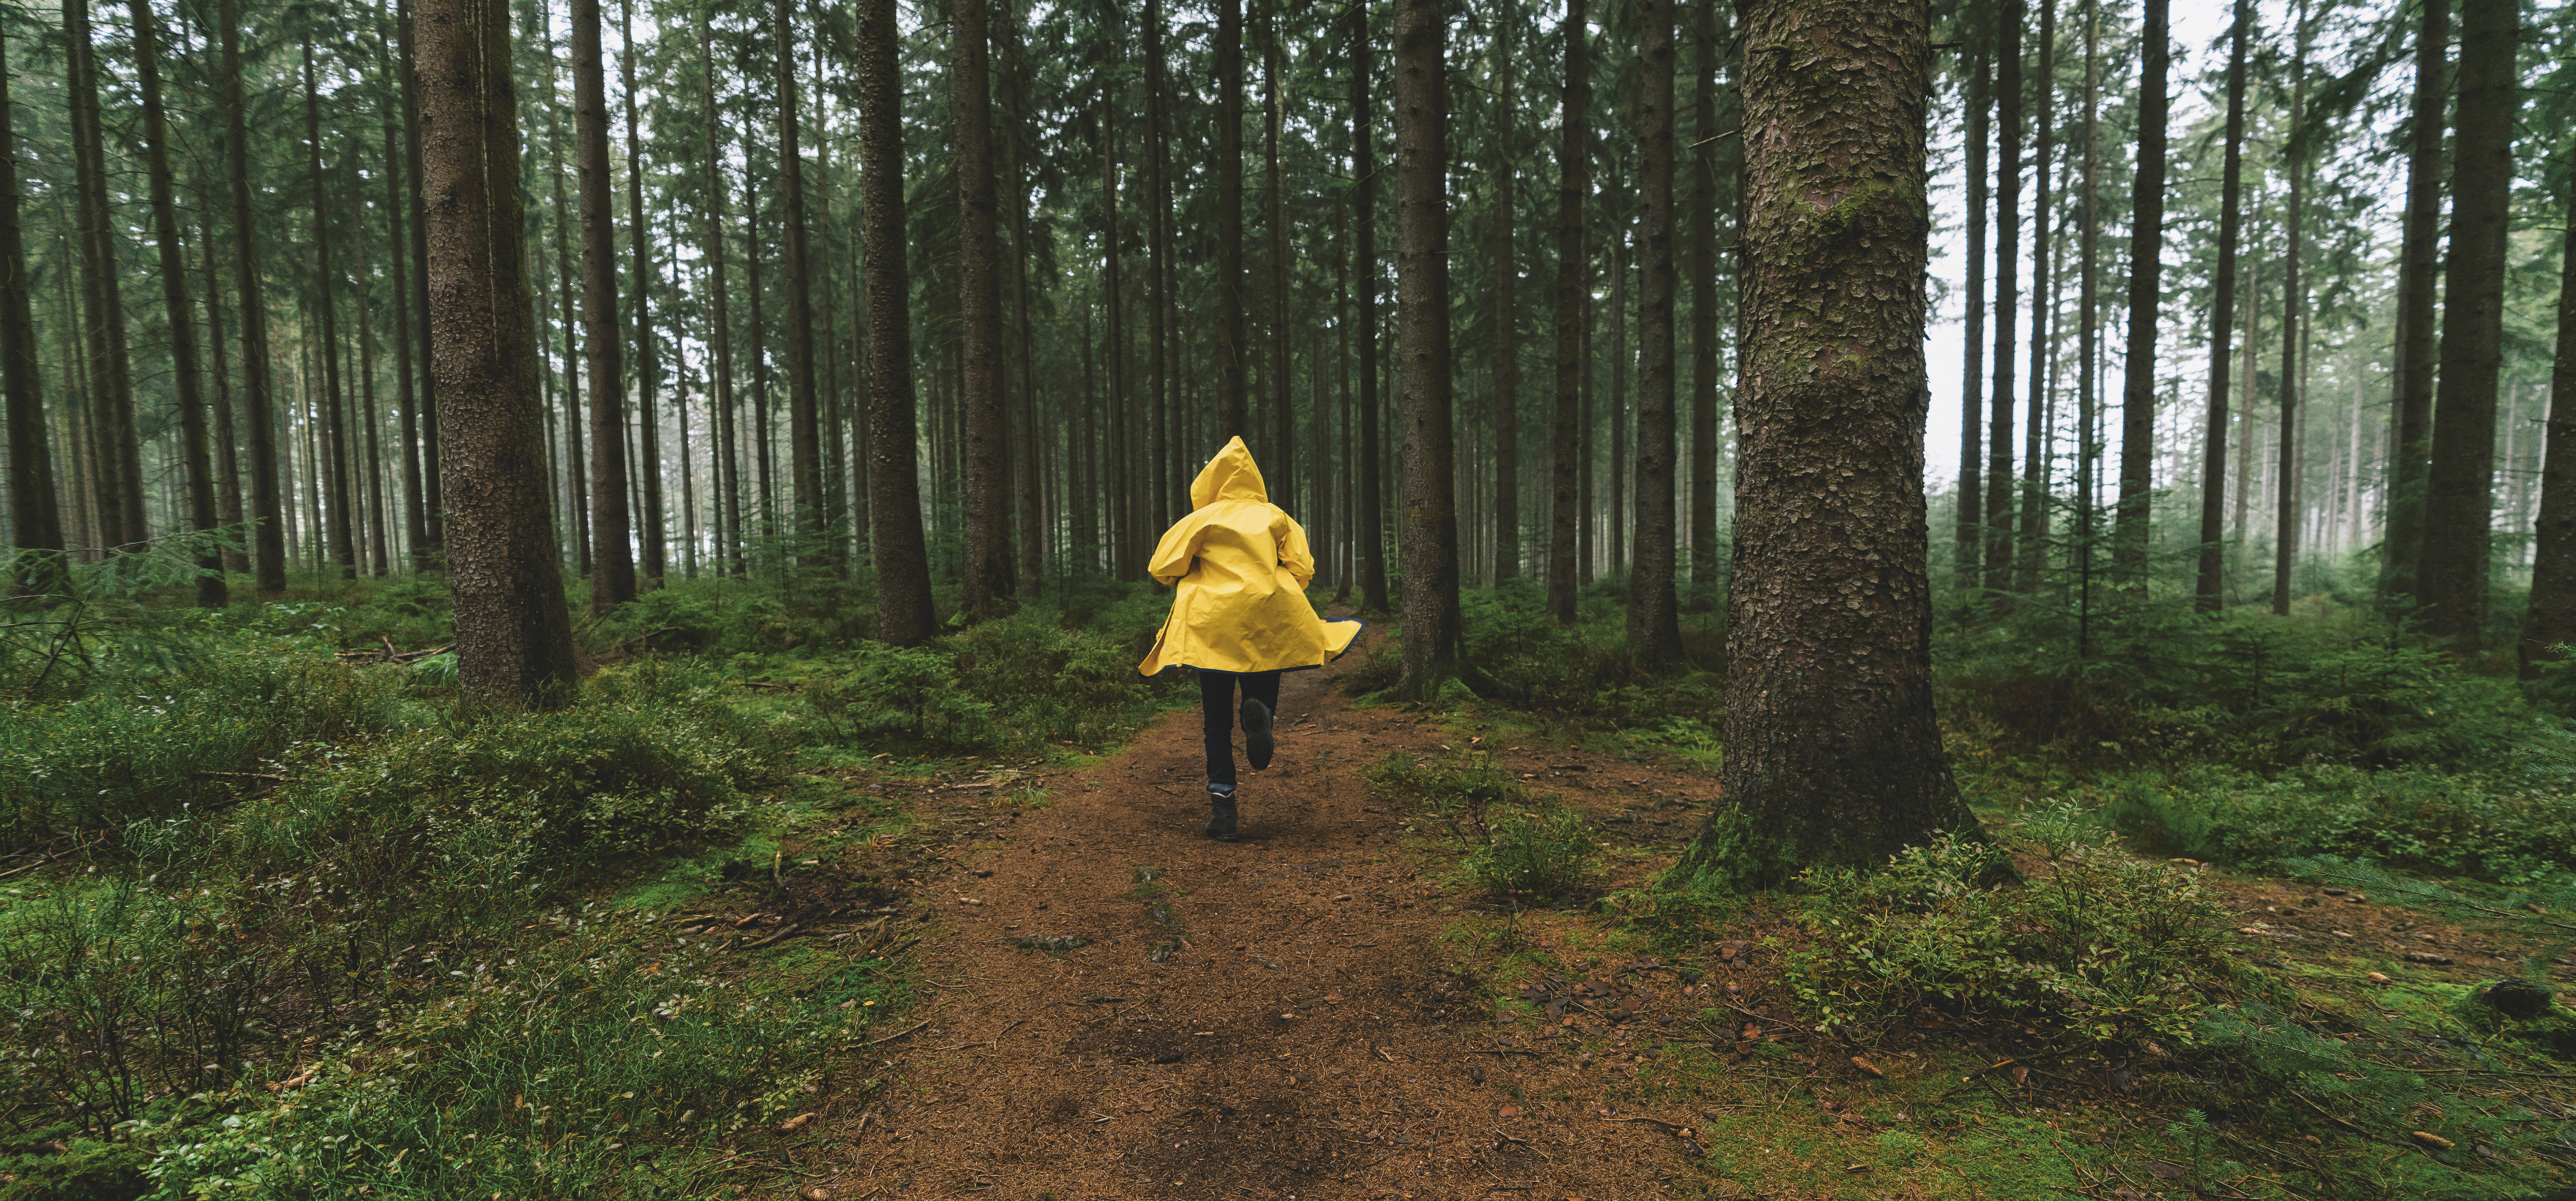 Descriptif de la photo: Un personnage, de dos, vêtu d'un ciré jaune court dans la forêt